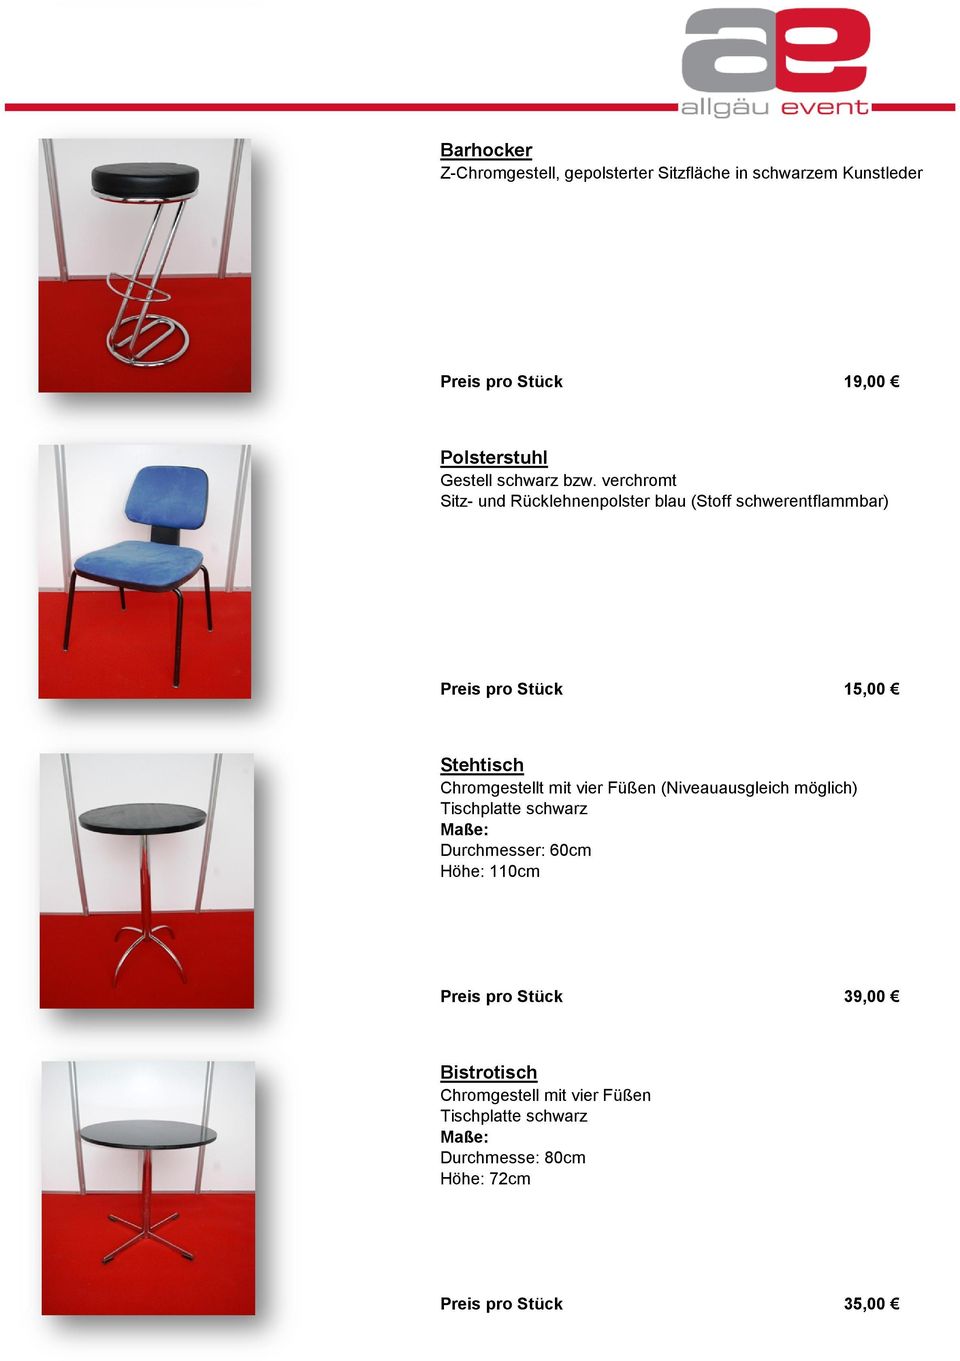 verchromt Sitz- und Rücklehnenpolster blau (Stoff schwerentflammbar) Preis pro Stück 15,00 Stehtisch Chromgestellt